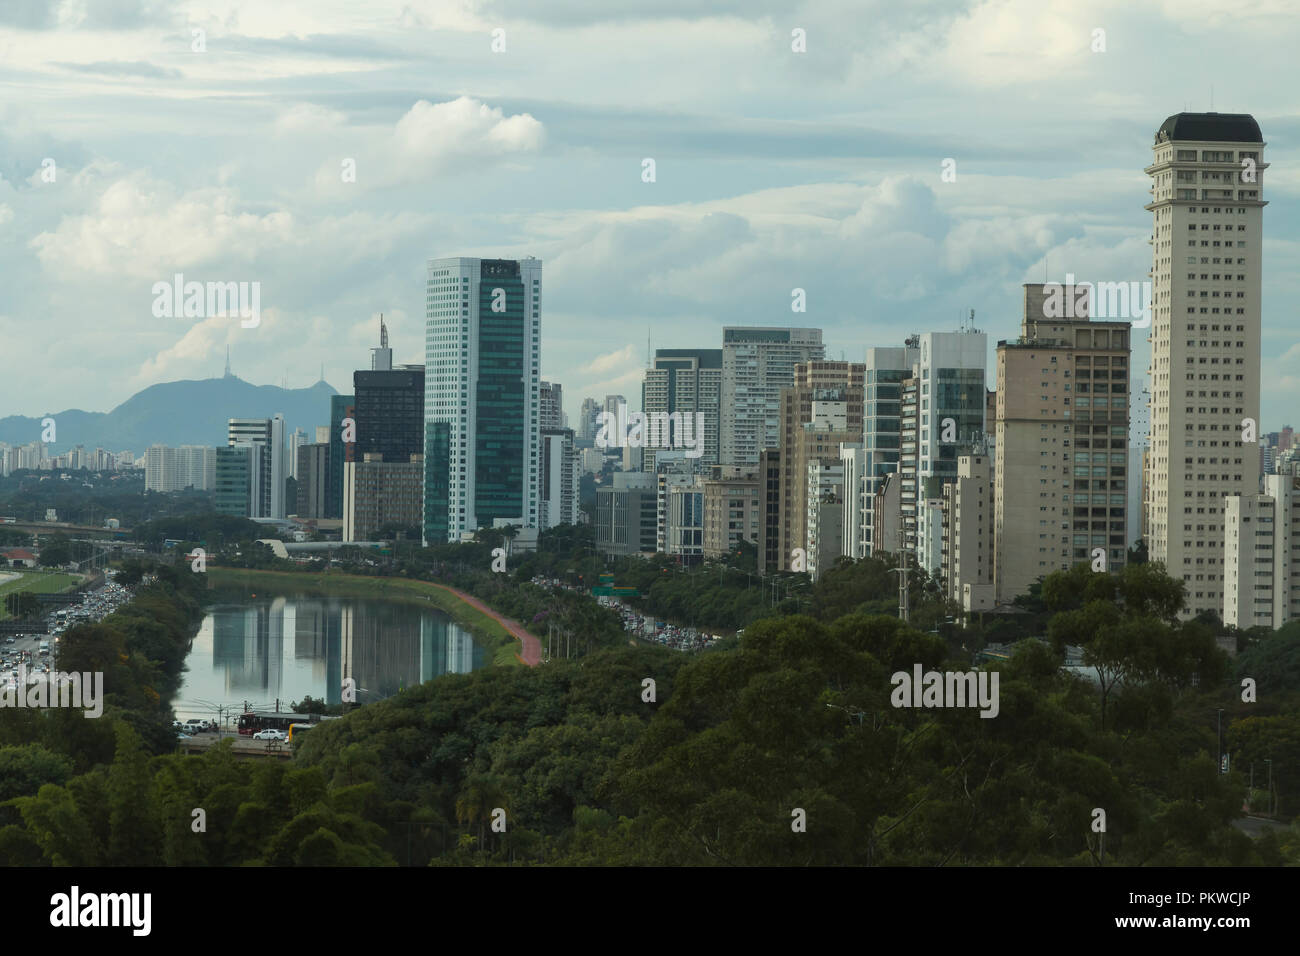 City of Sao Paulo Brazil South America, Marginal Pinheiros Avenue, and Pinheiros River. Stock Photo